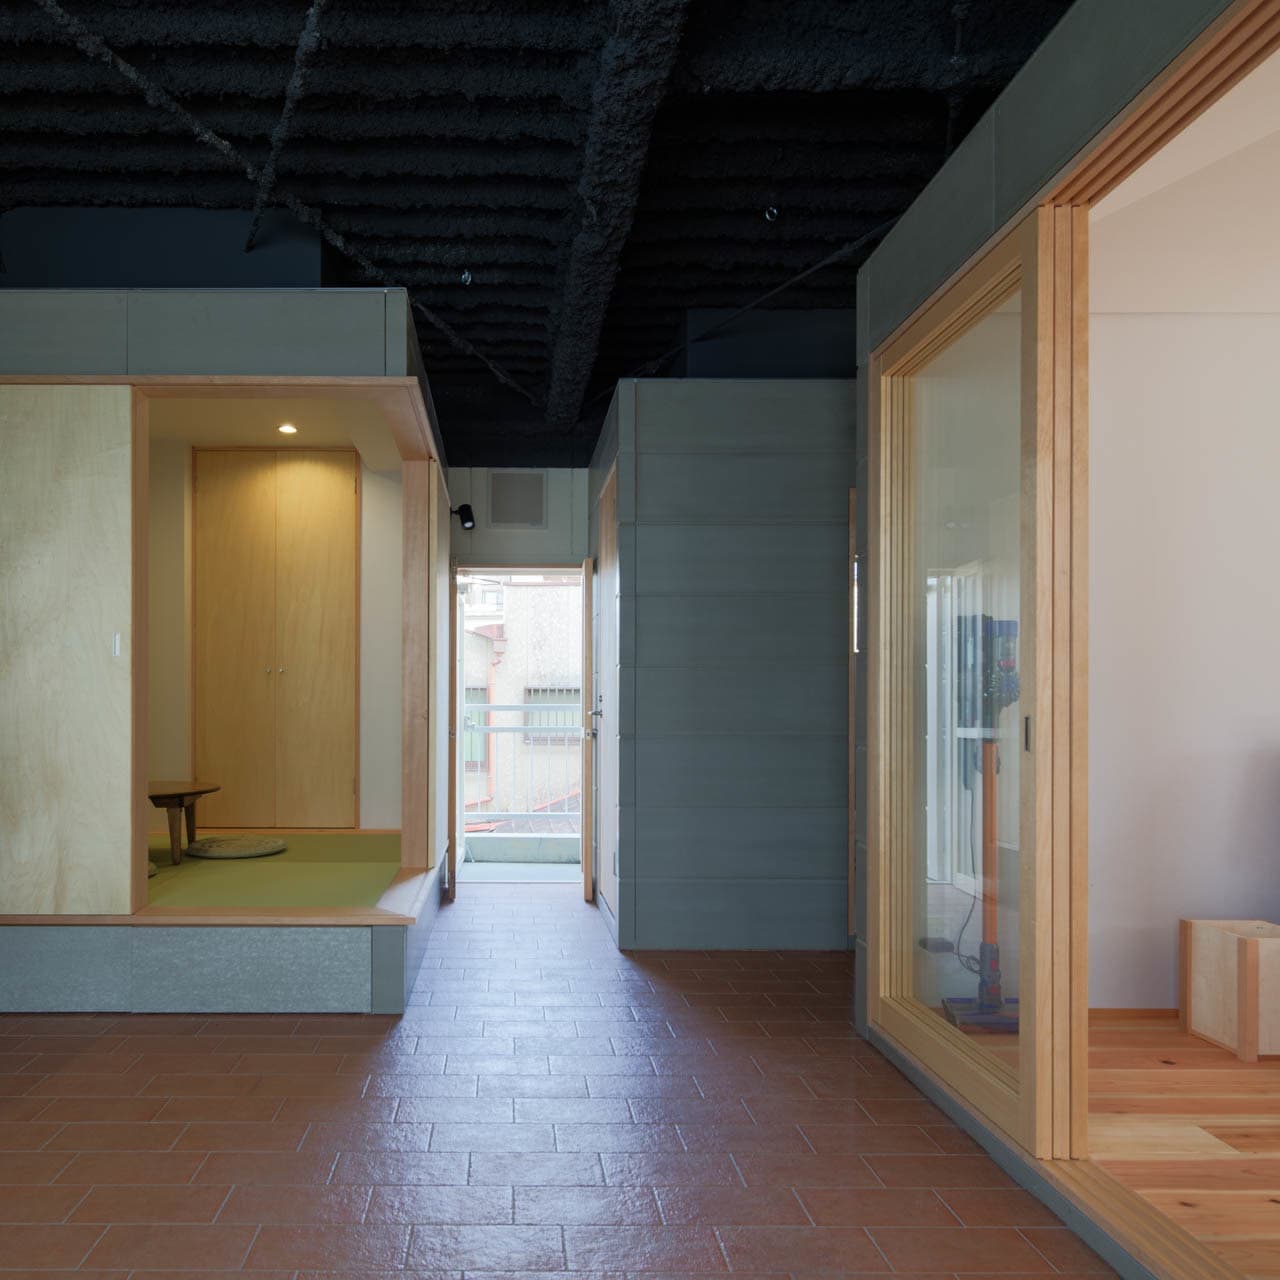 大阪の建築家・中平勝が設計したインナーテラスのあるマンションリノベーションです